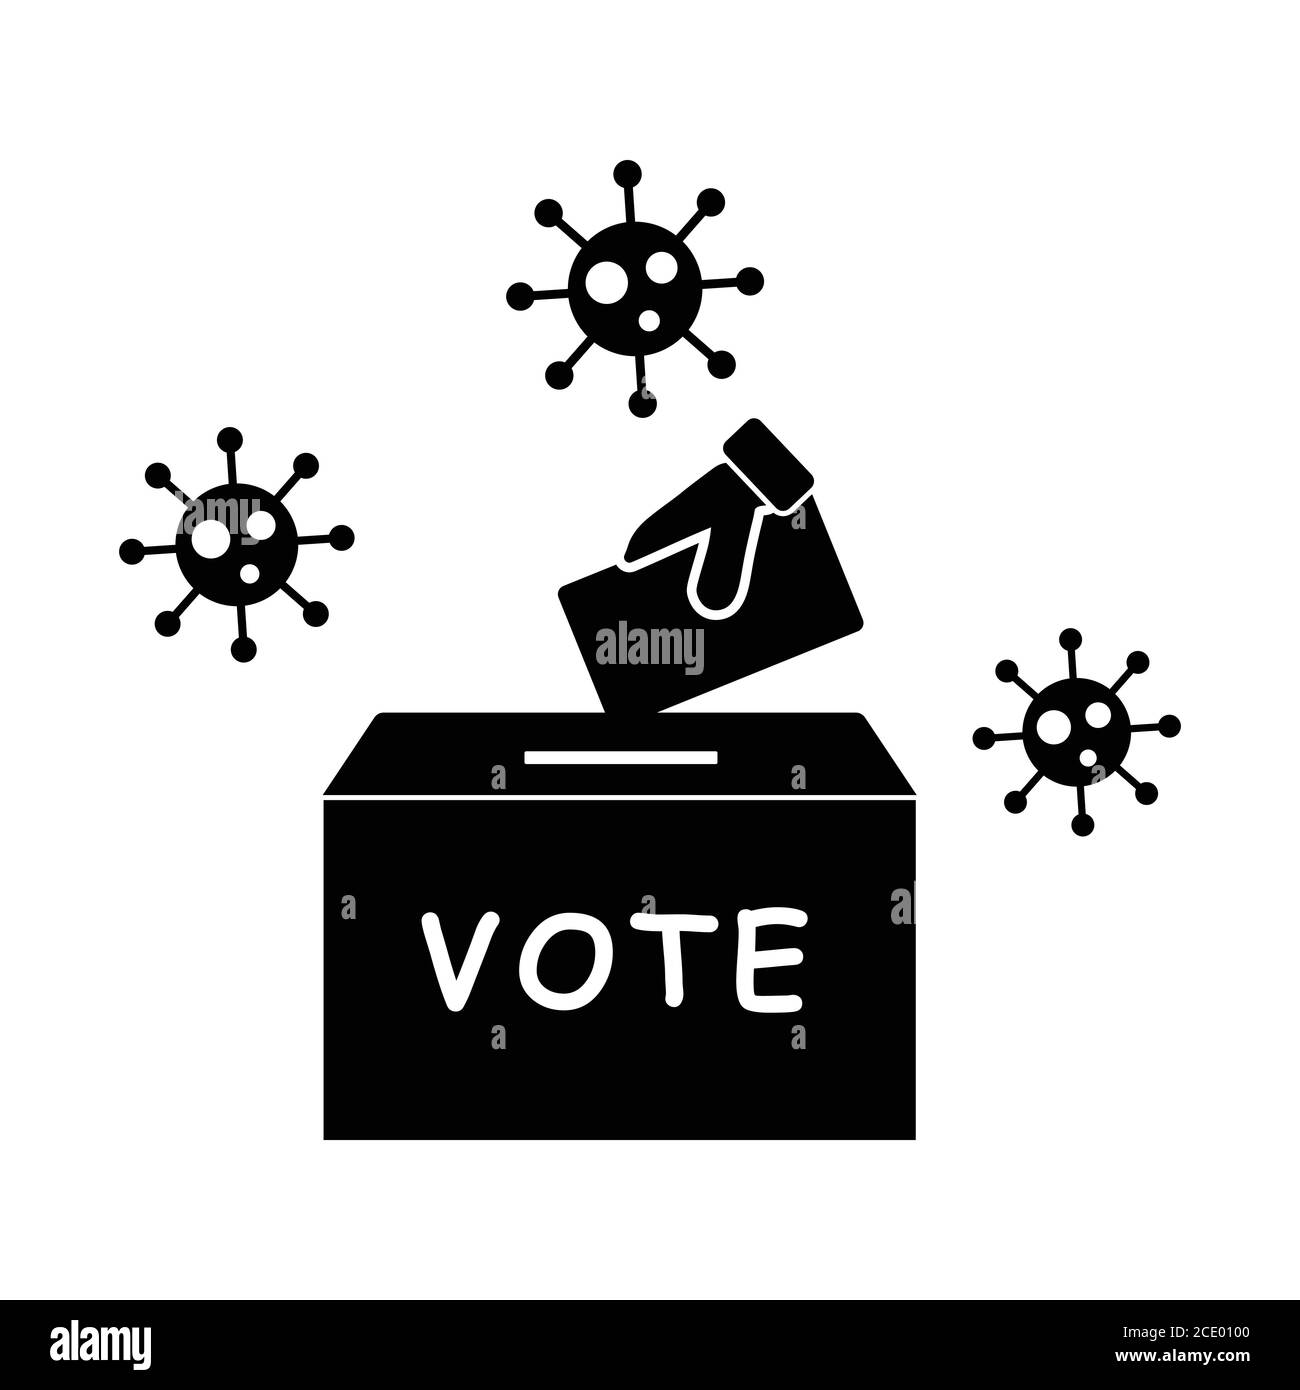 Elezione di voto durante Pandemic Virus. Pittogramma che raffigura gli elettori che votano a scrutinio durante un focolaio di pandemia virale. Vettore EPS bianco e nero Illustrazione Vettoriale